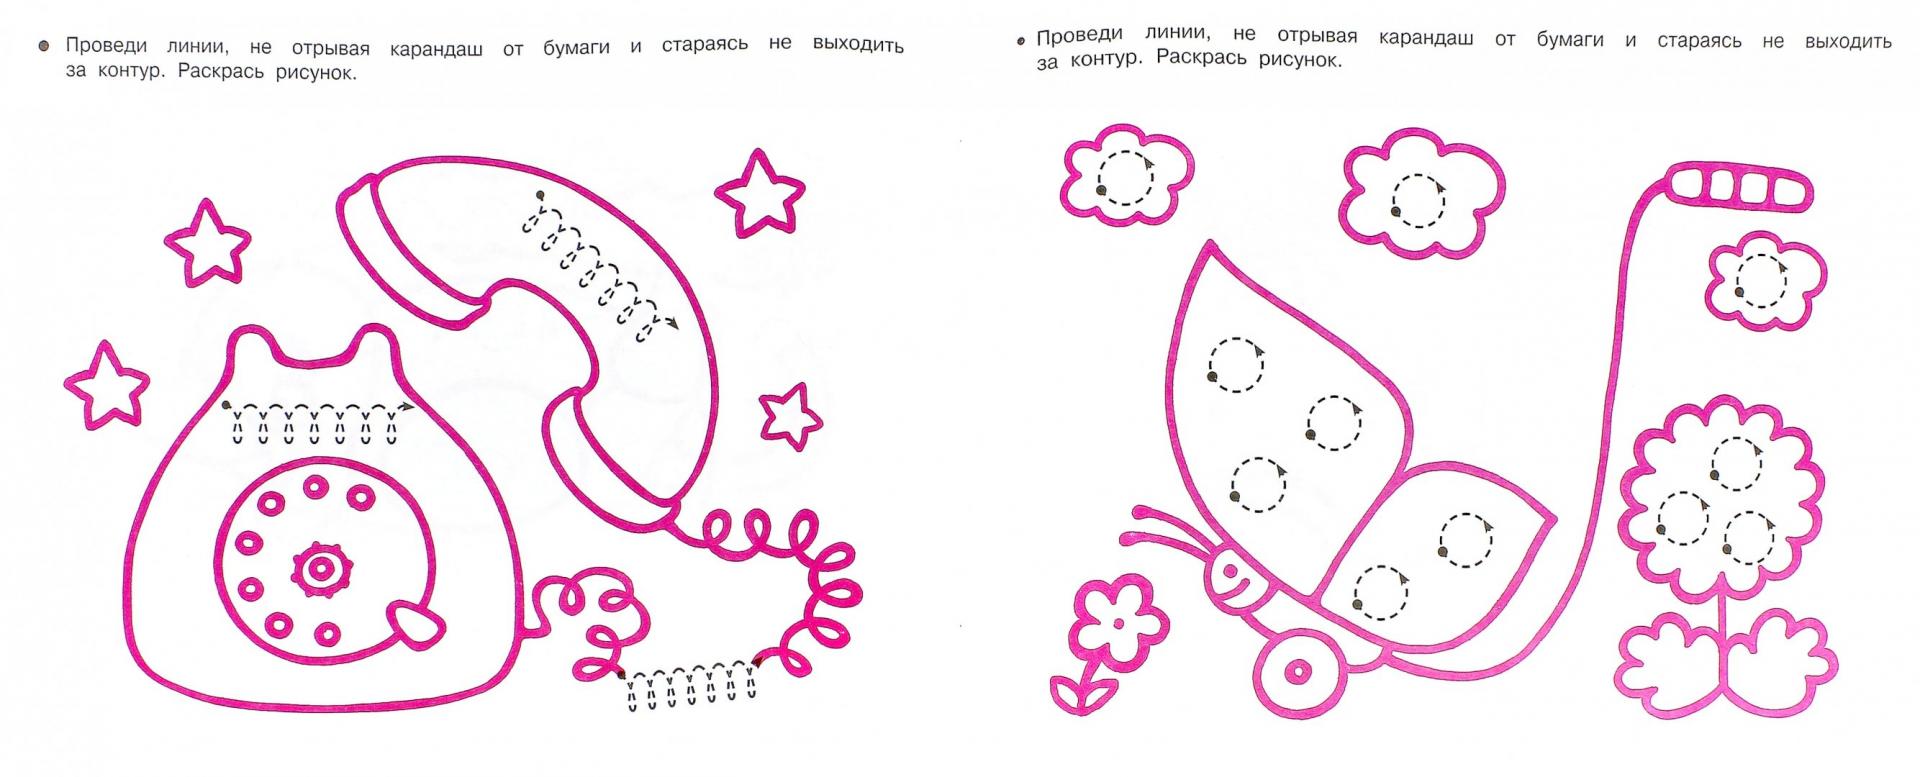 Иллюстрация 1 из 5 для Упражнения для подготовки к школе. Для девочек | Лабиринт - книги. Источник: Лабиринт